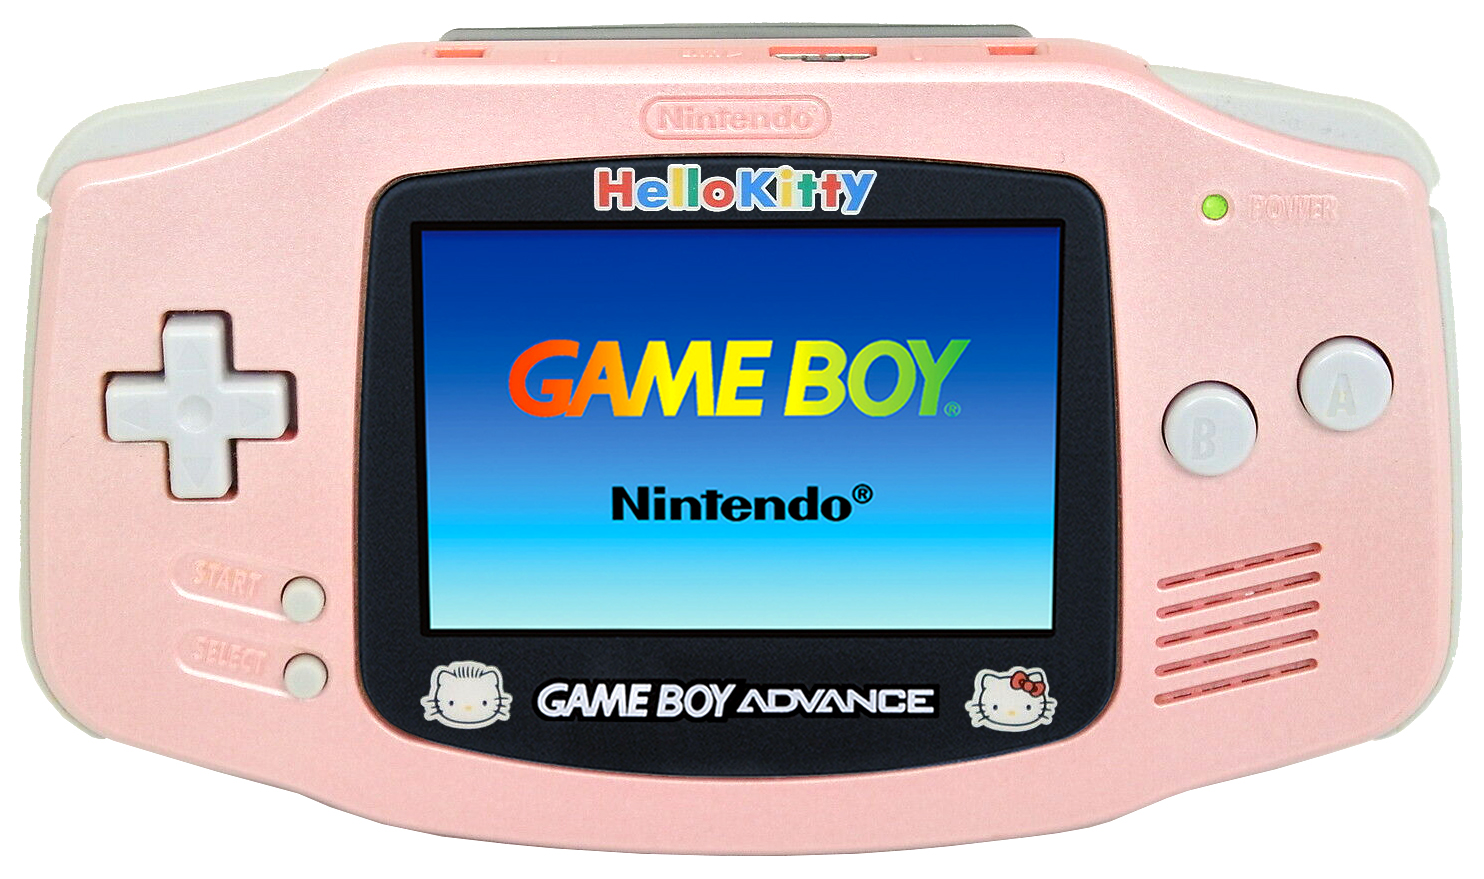 Nintendo Game Boy Advance Hello Kitty - pink w/ logo (Japan, 2001)